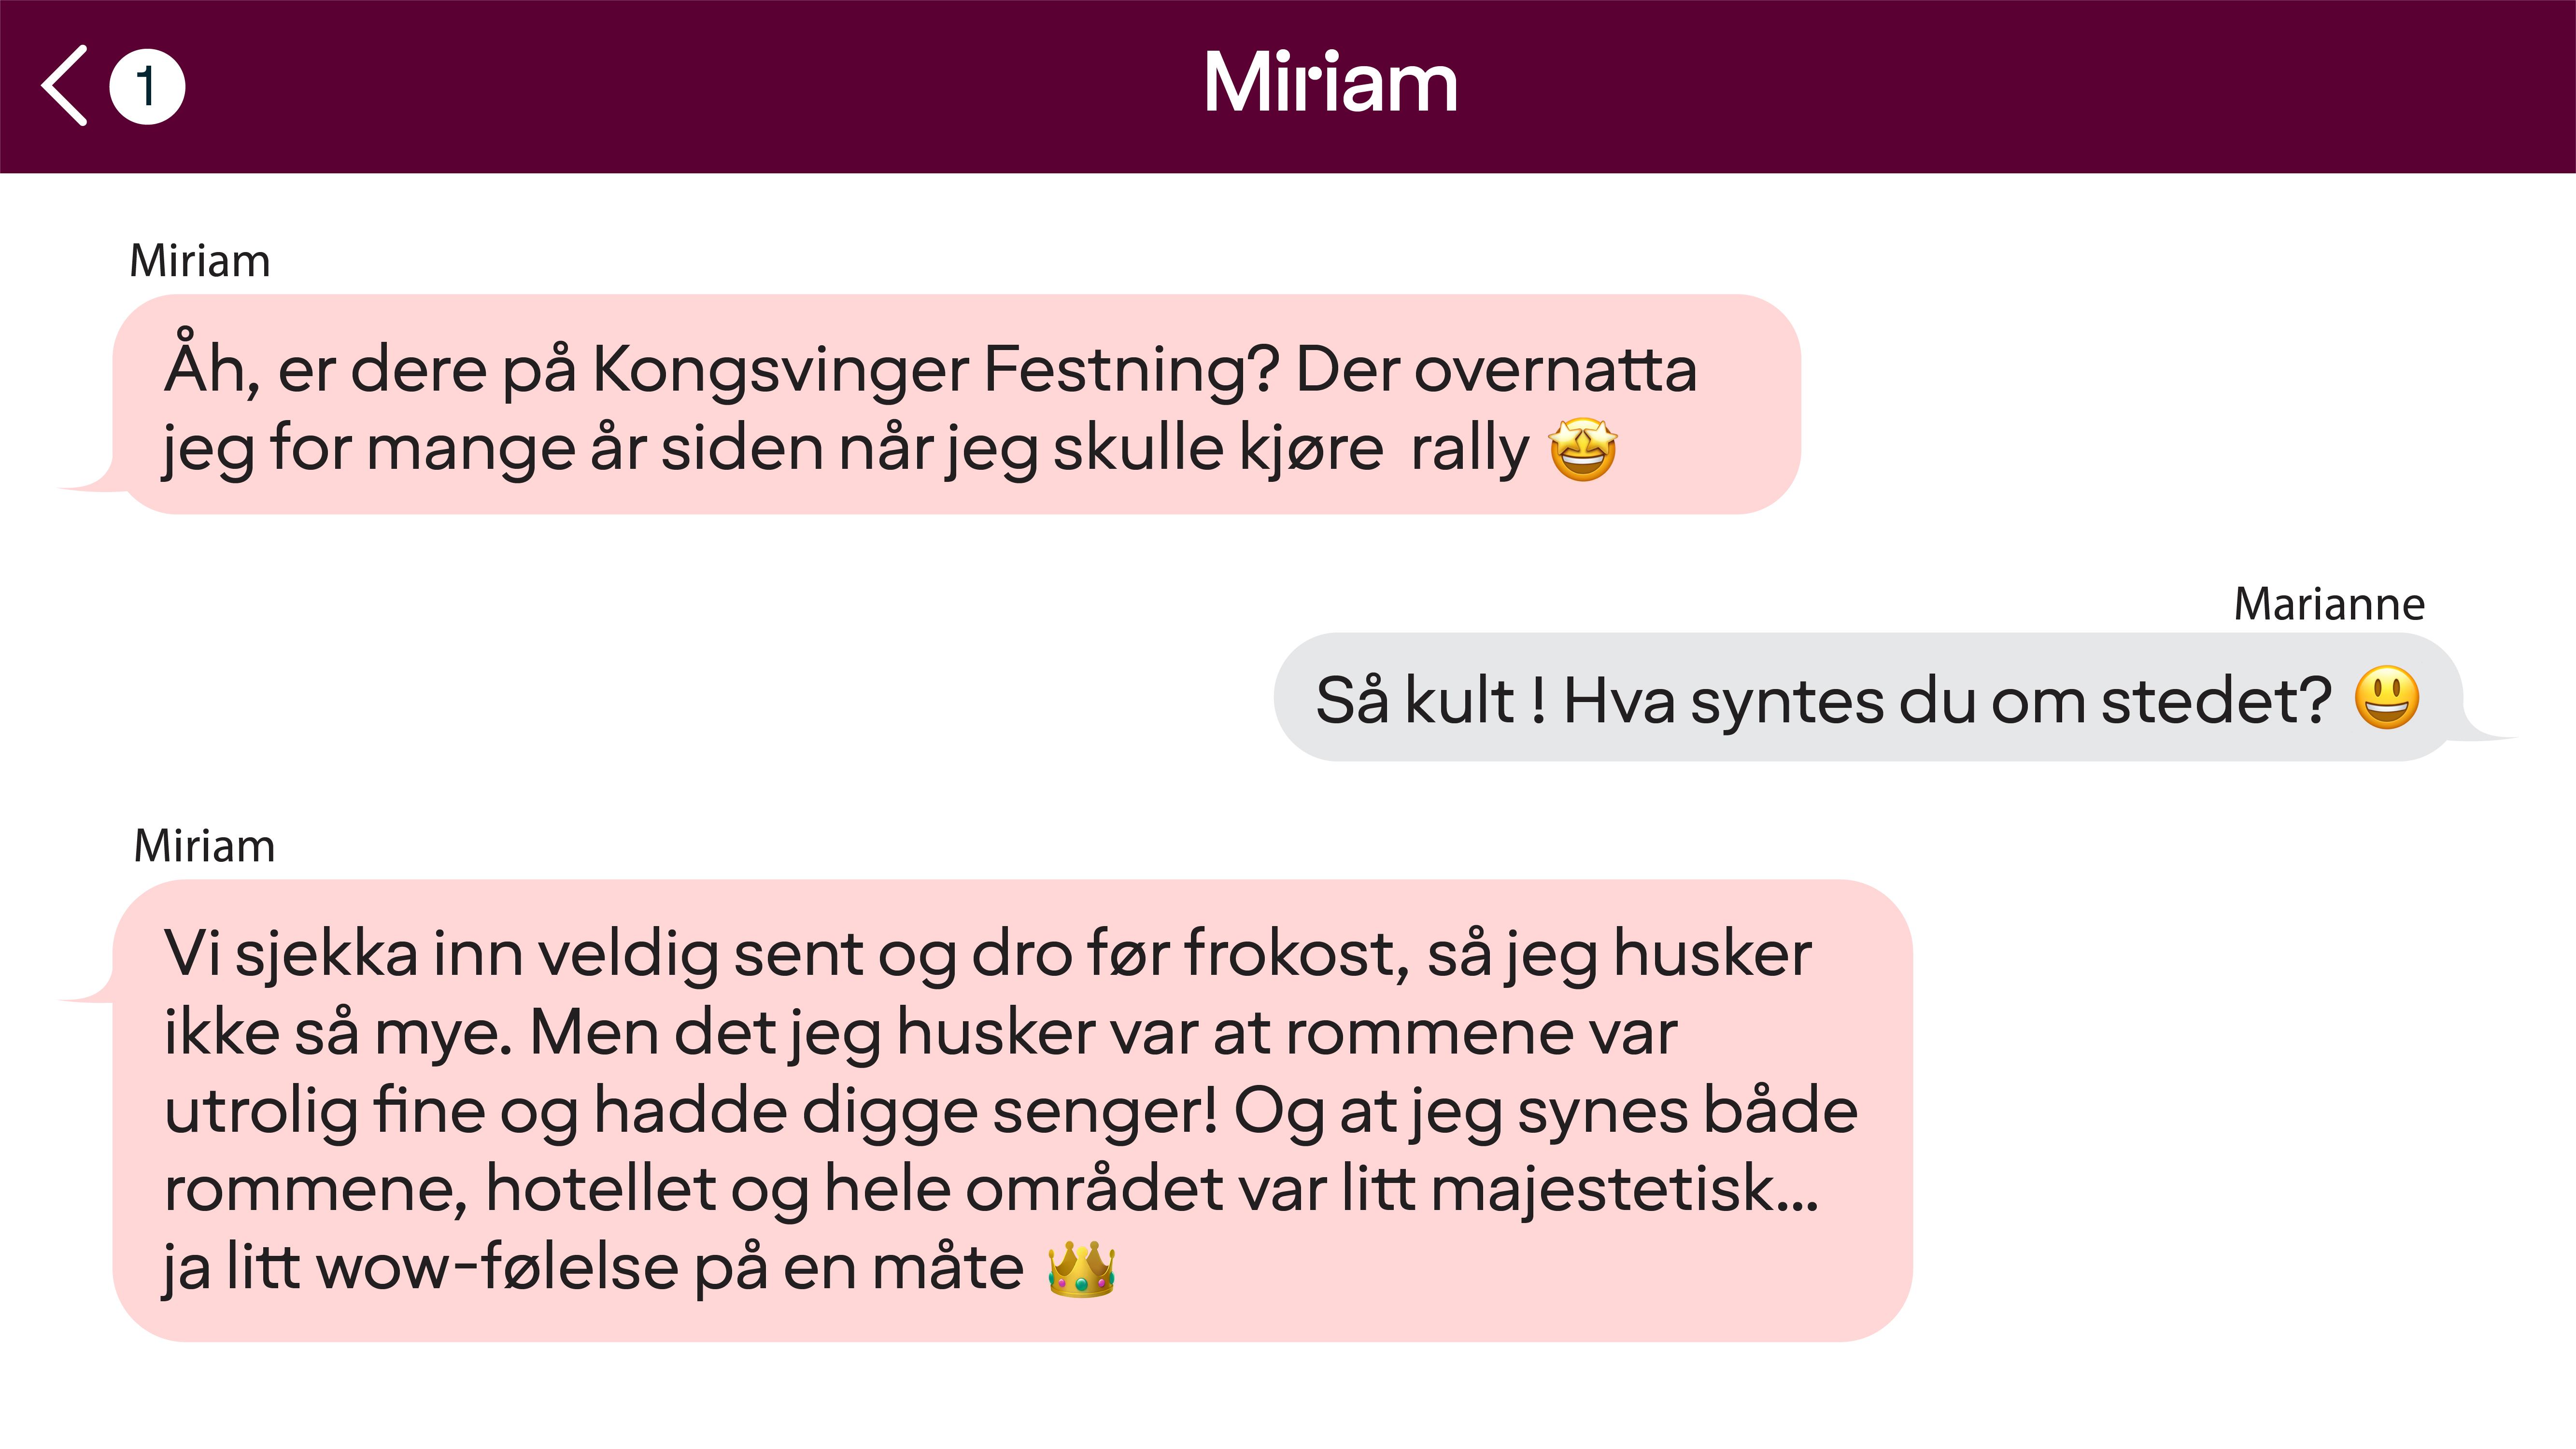 kongsvinger festning image sms-text